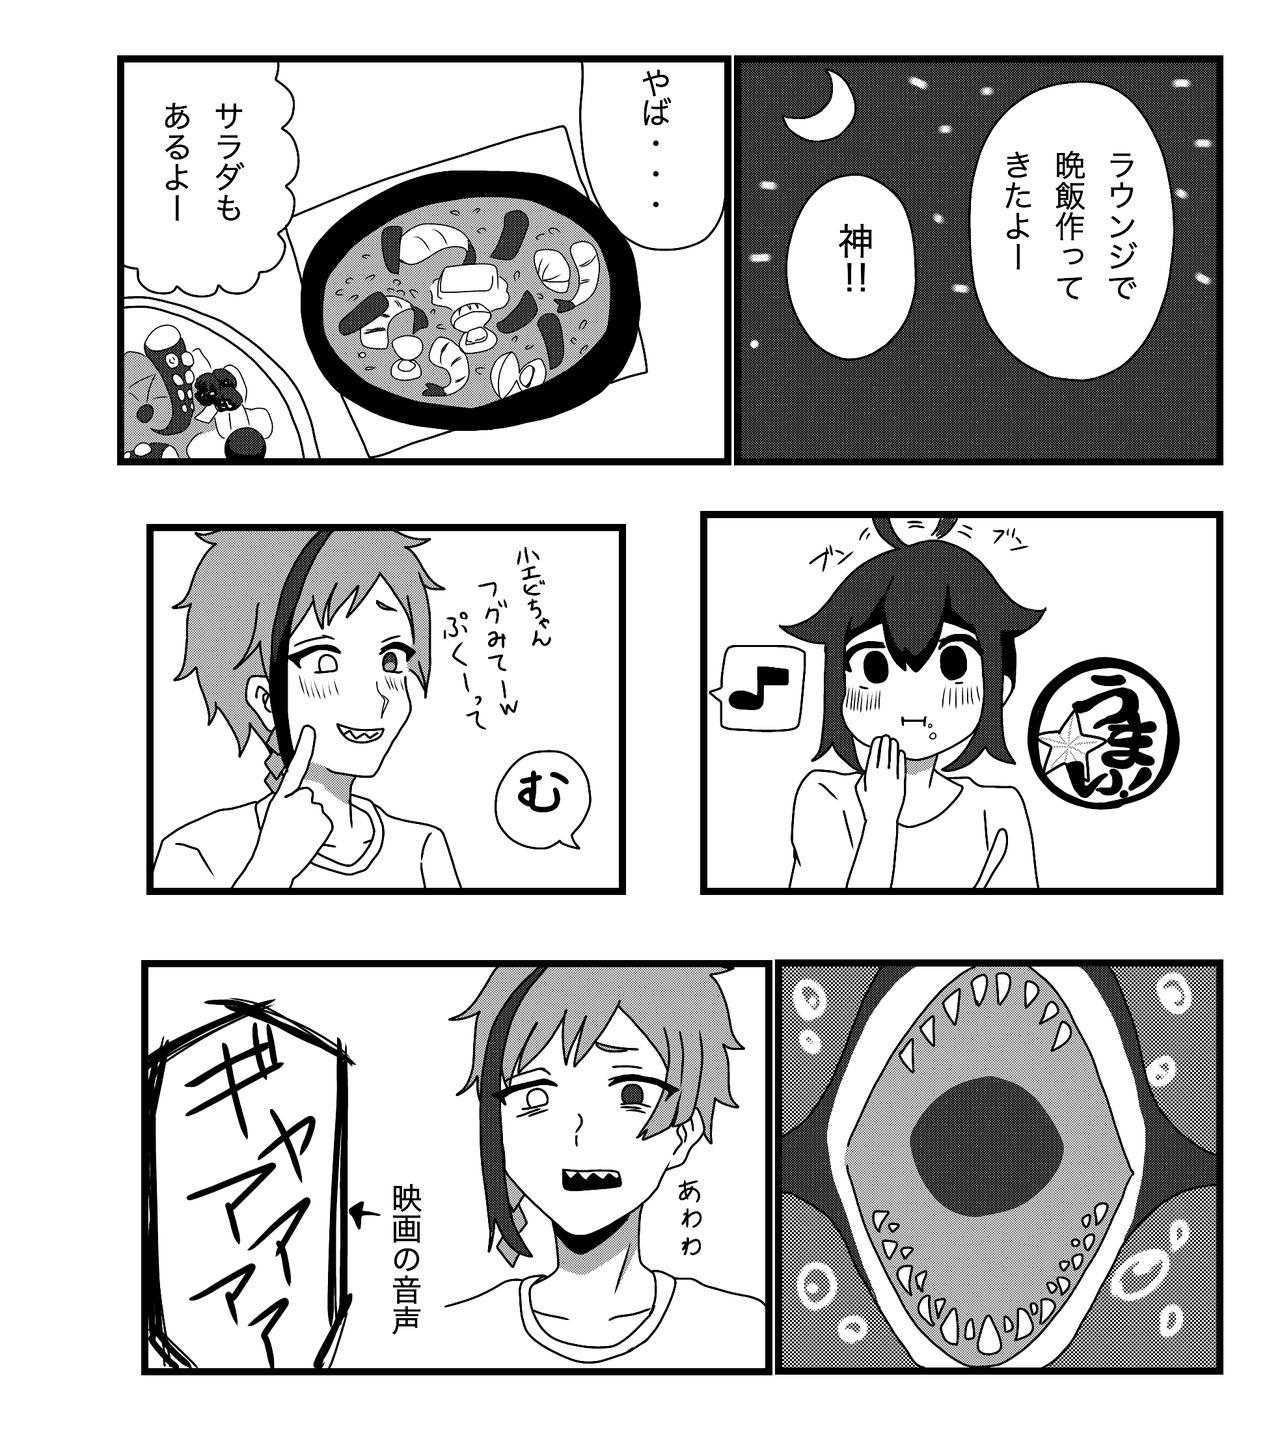 Sharing Furo Kan ♀ No Tsumori - Disney twisted-wonderland Old And Young - Page 11